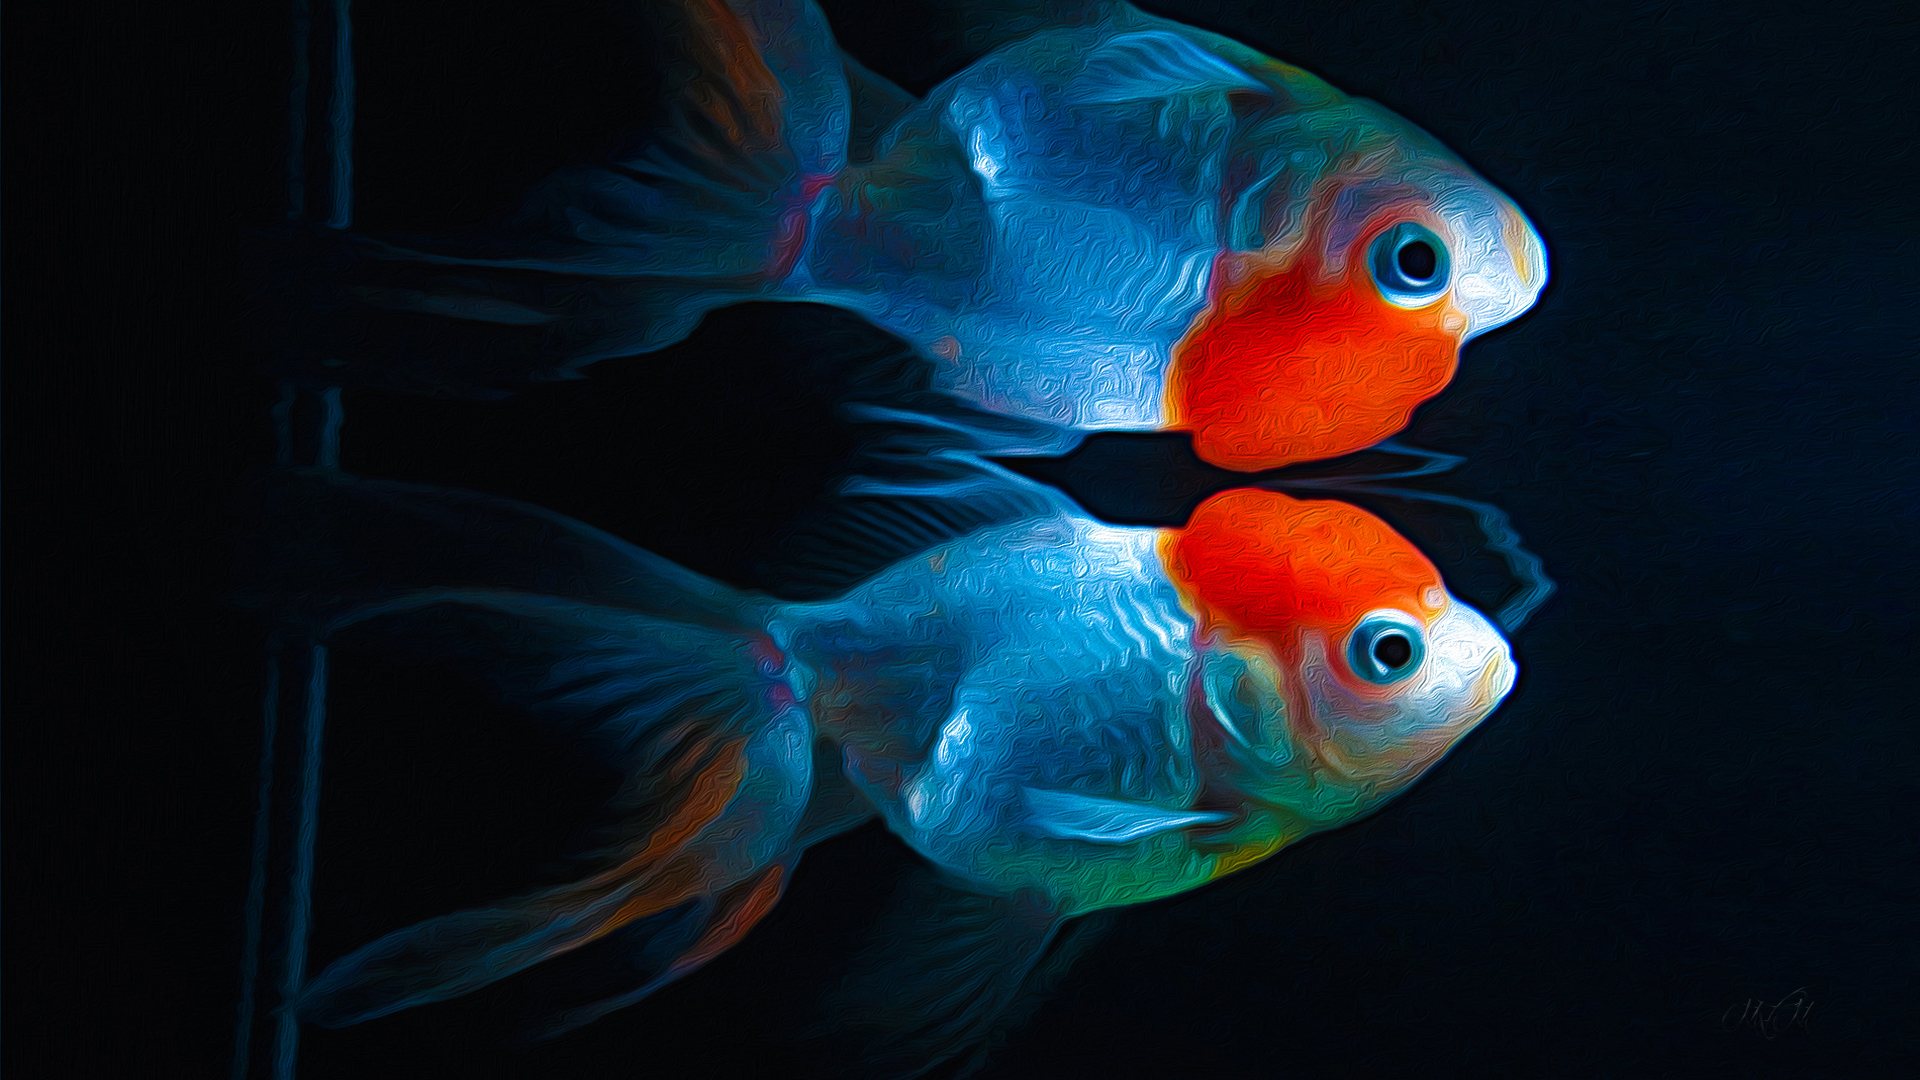 Free download wallpaper Animal, Fish, Goldfish, Kinguio on your PC desktop